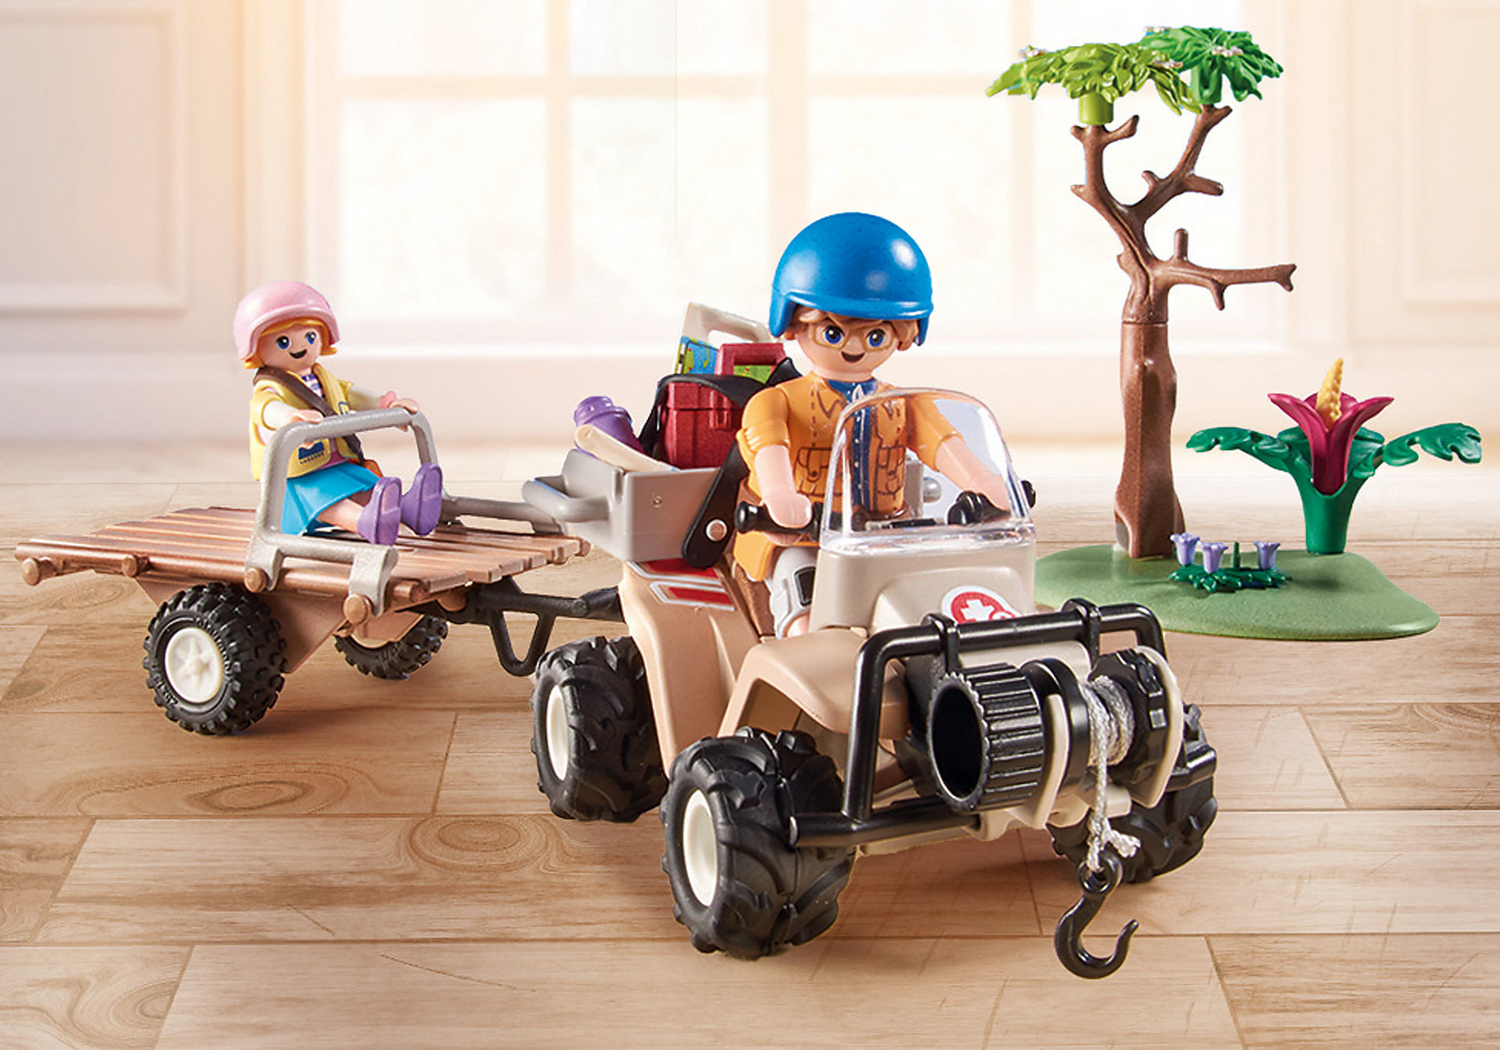 Playmobil Wiltopia - Animal Rescue Quad - Imagination Toys